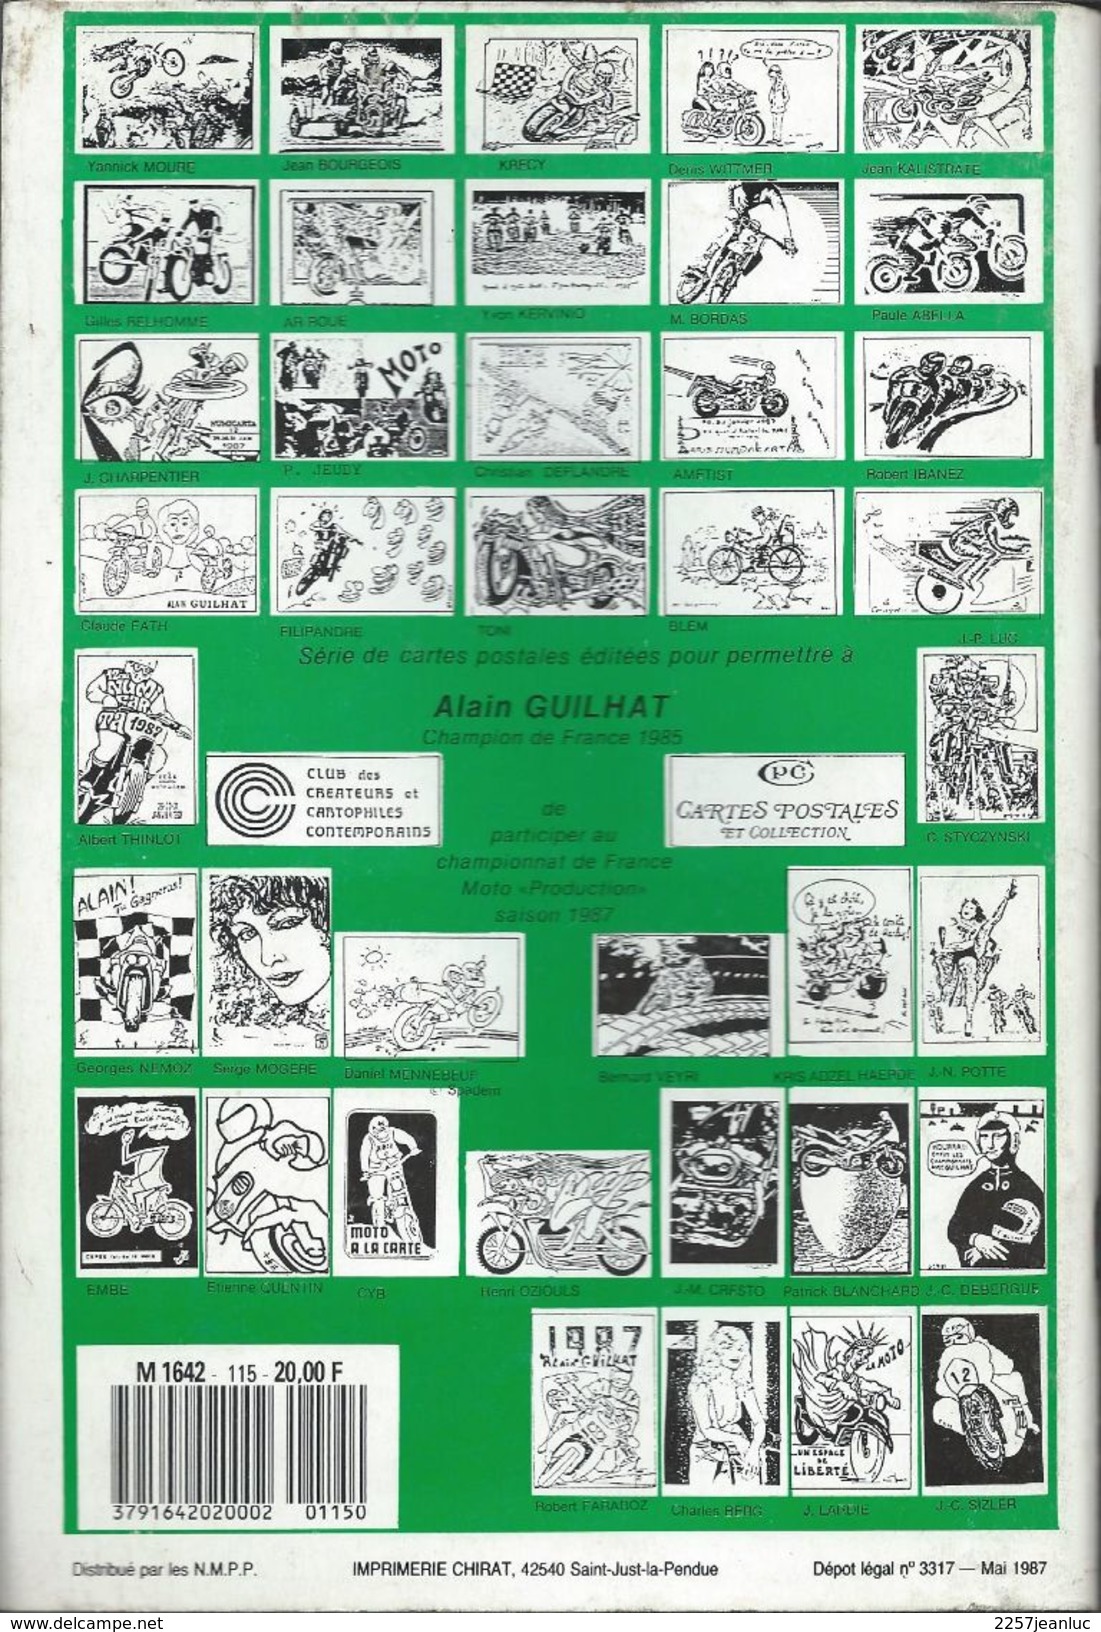 Cartes Postales Et Collections Juin1987  Magazines N: 115 Llustration &  Thèmes Divers 98 Pages - Frans